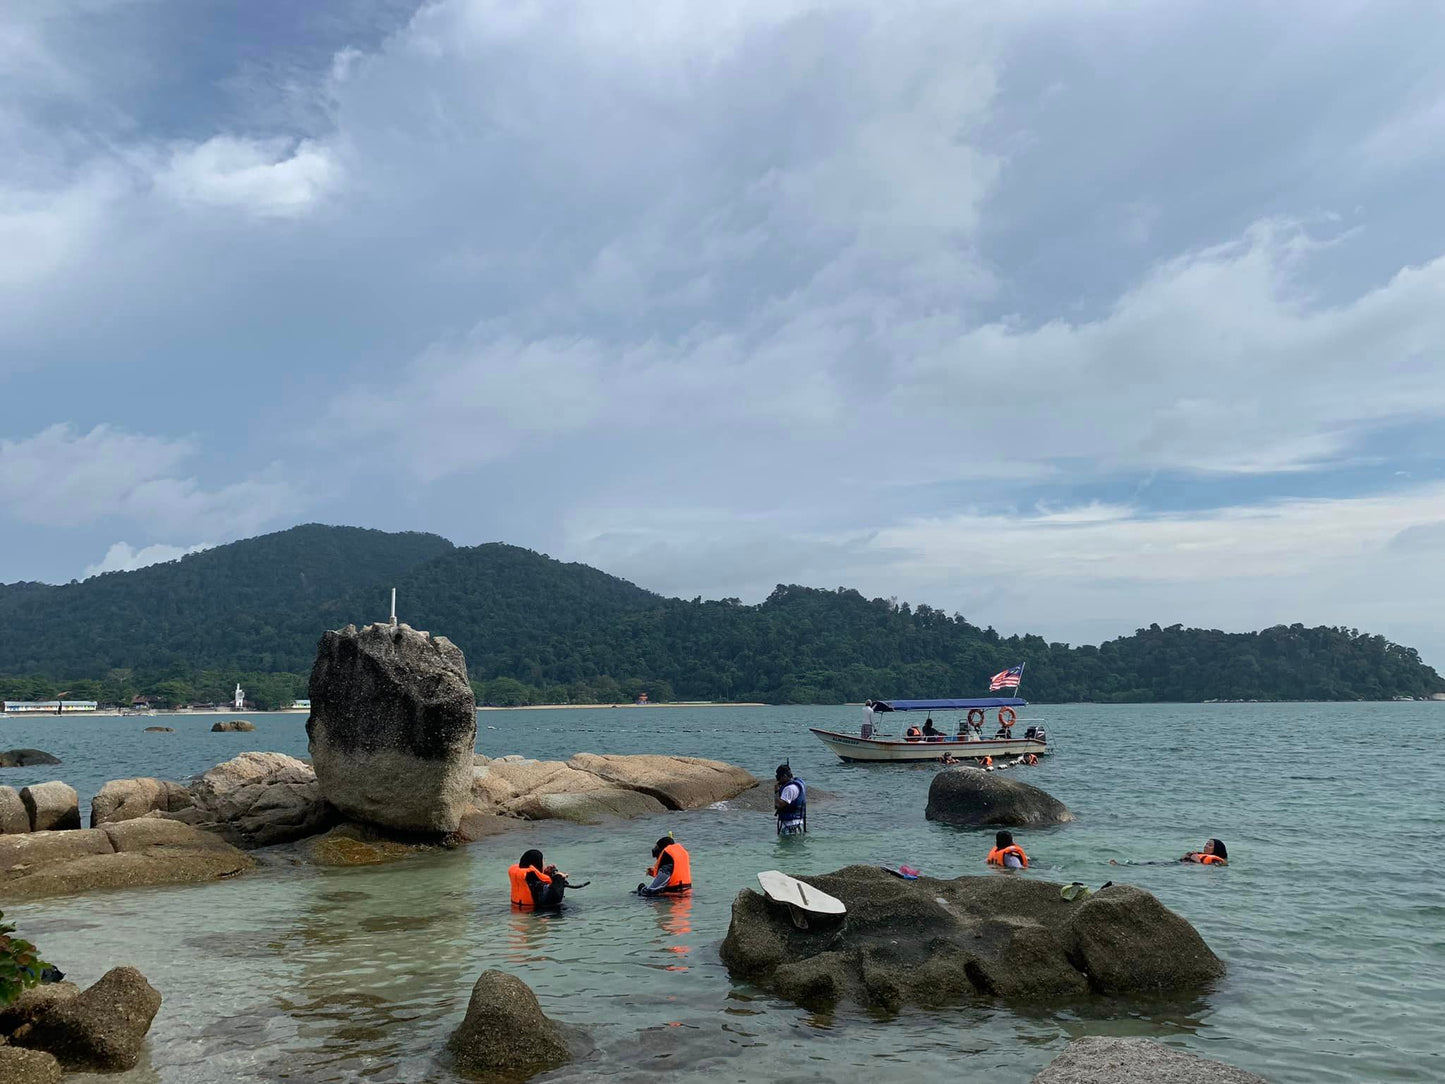 A5C: (3 días) Paraíso en la isla de Pangkor: descubra la belleza tranquila de la joya de Malasia